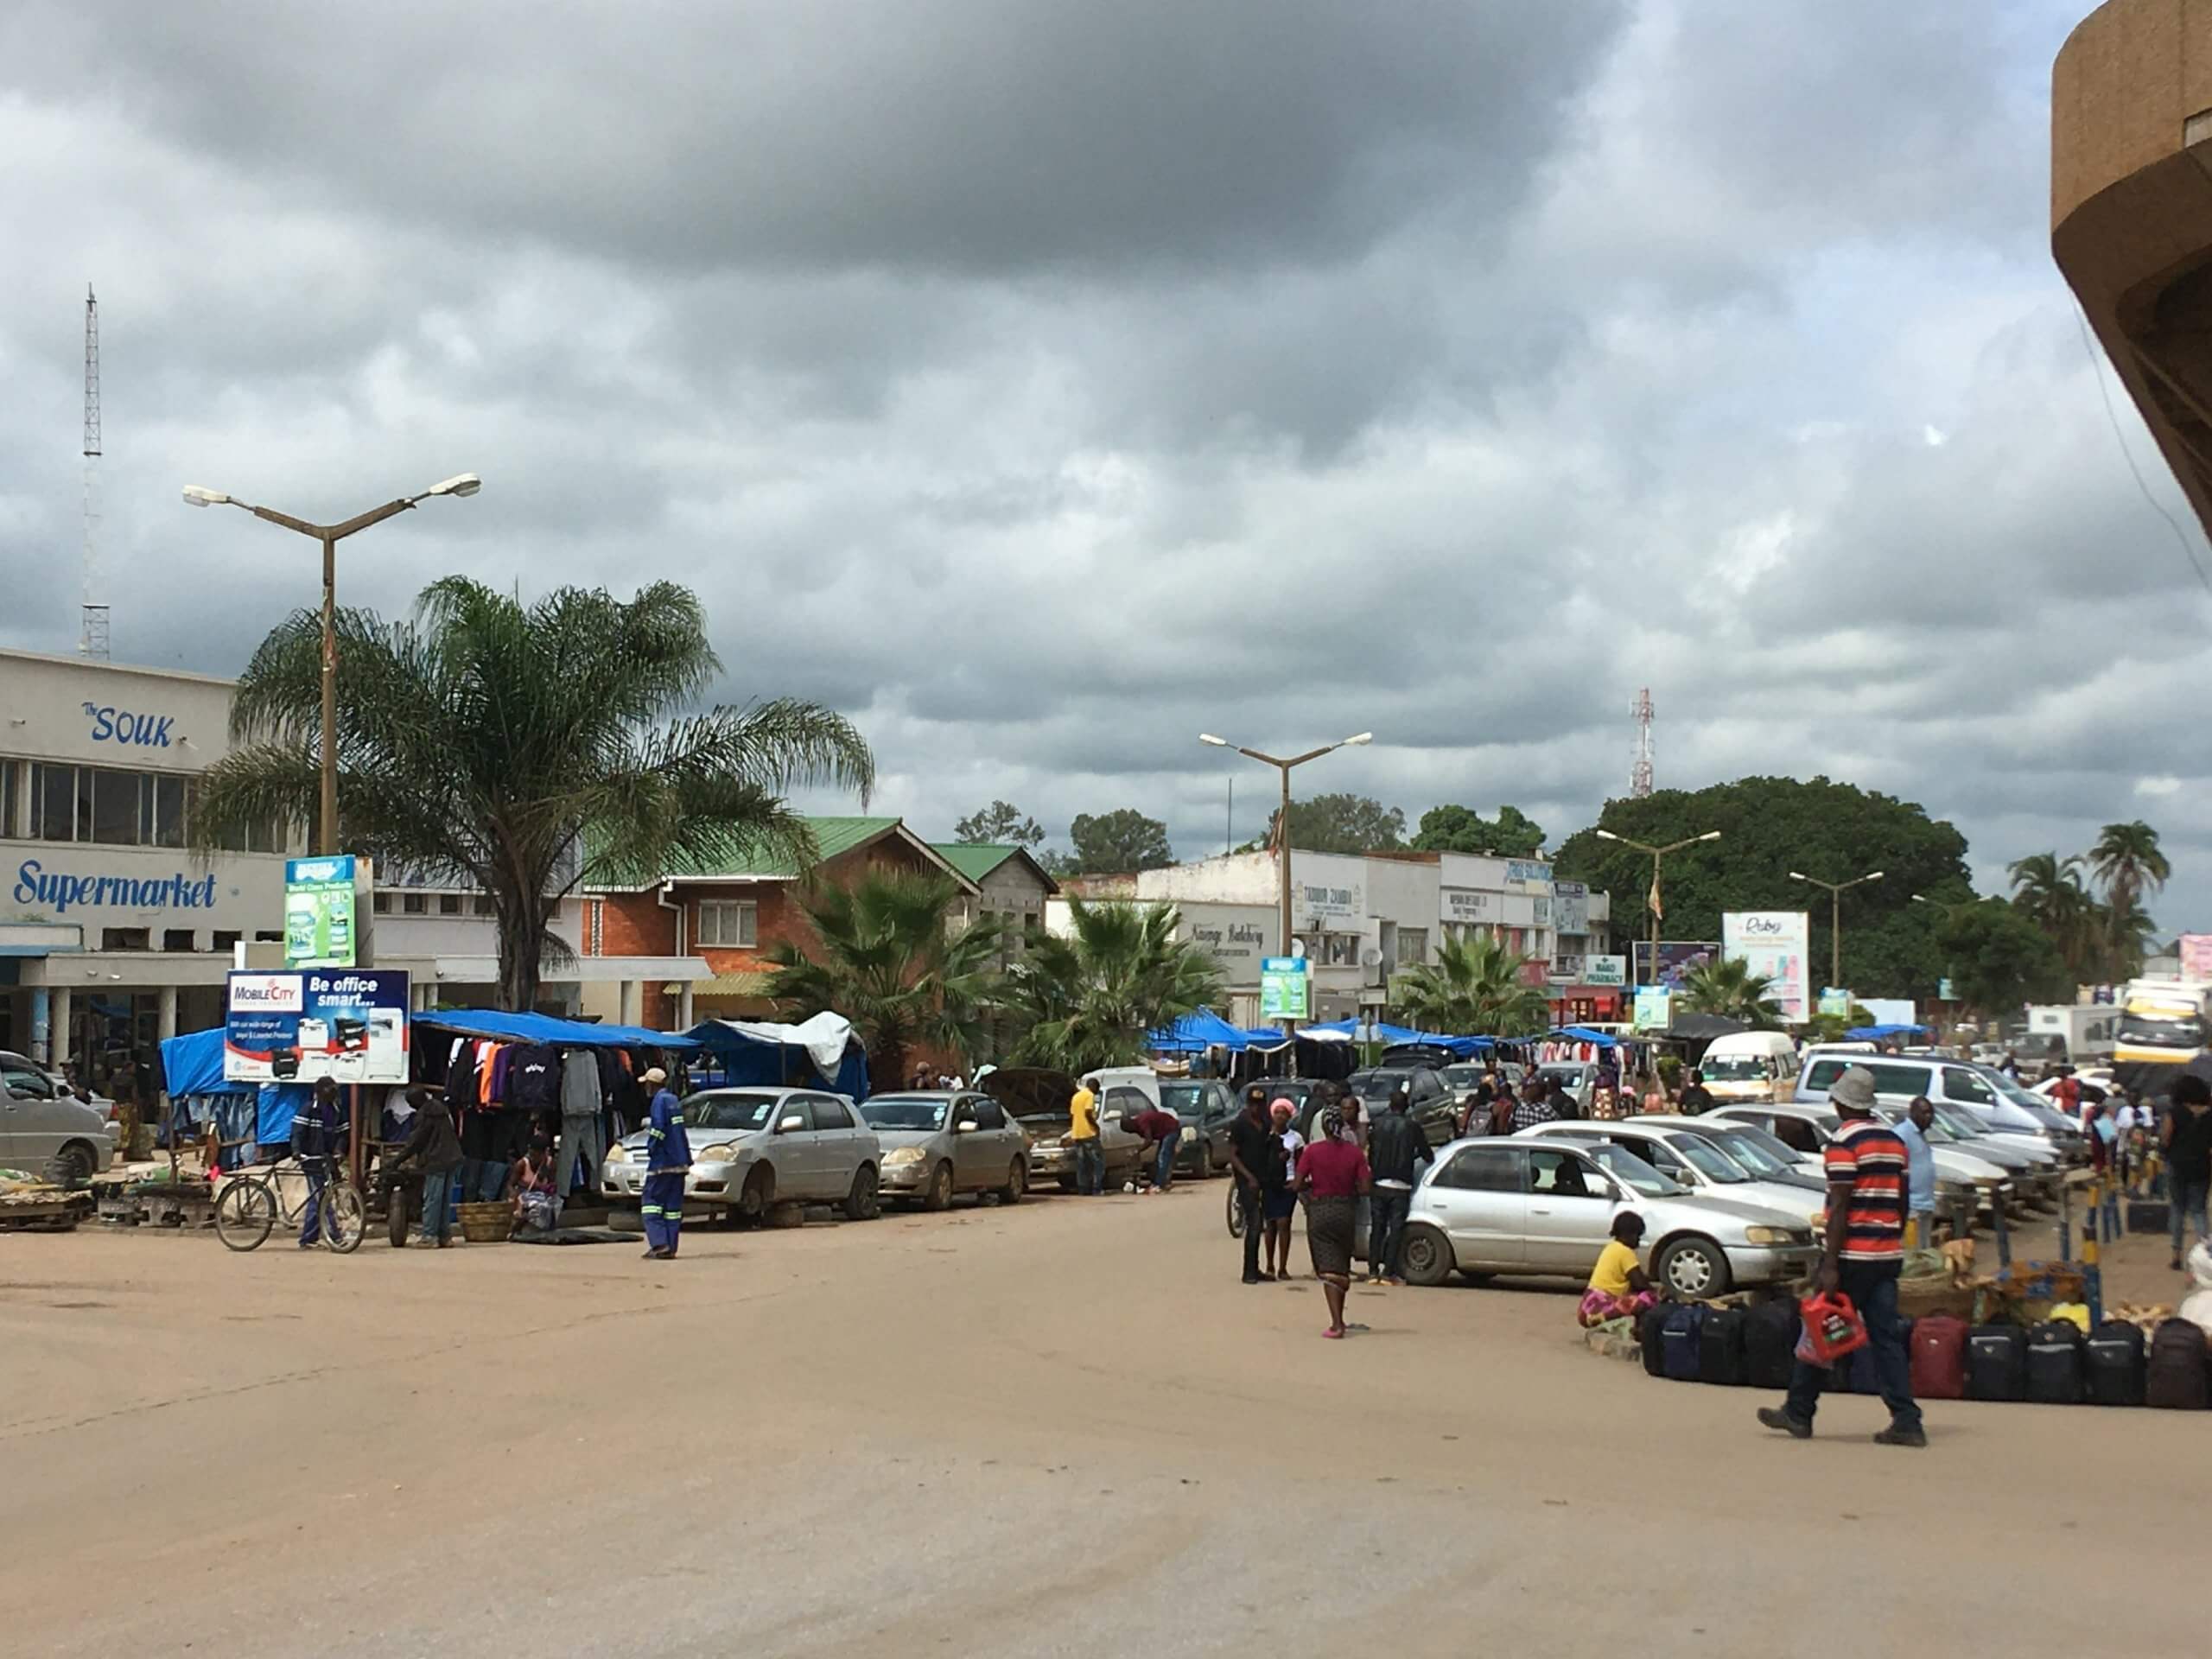 קבווה שבזמביה מתוארת לא פעם כעיר הרעילה ביותר בעולם. צילום: Mac H. Alford, CC BY-SA 4.0